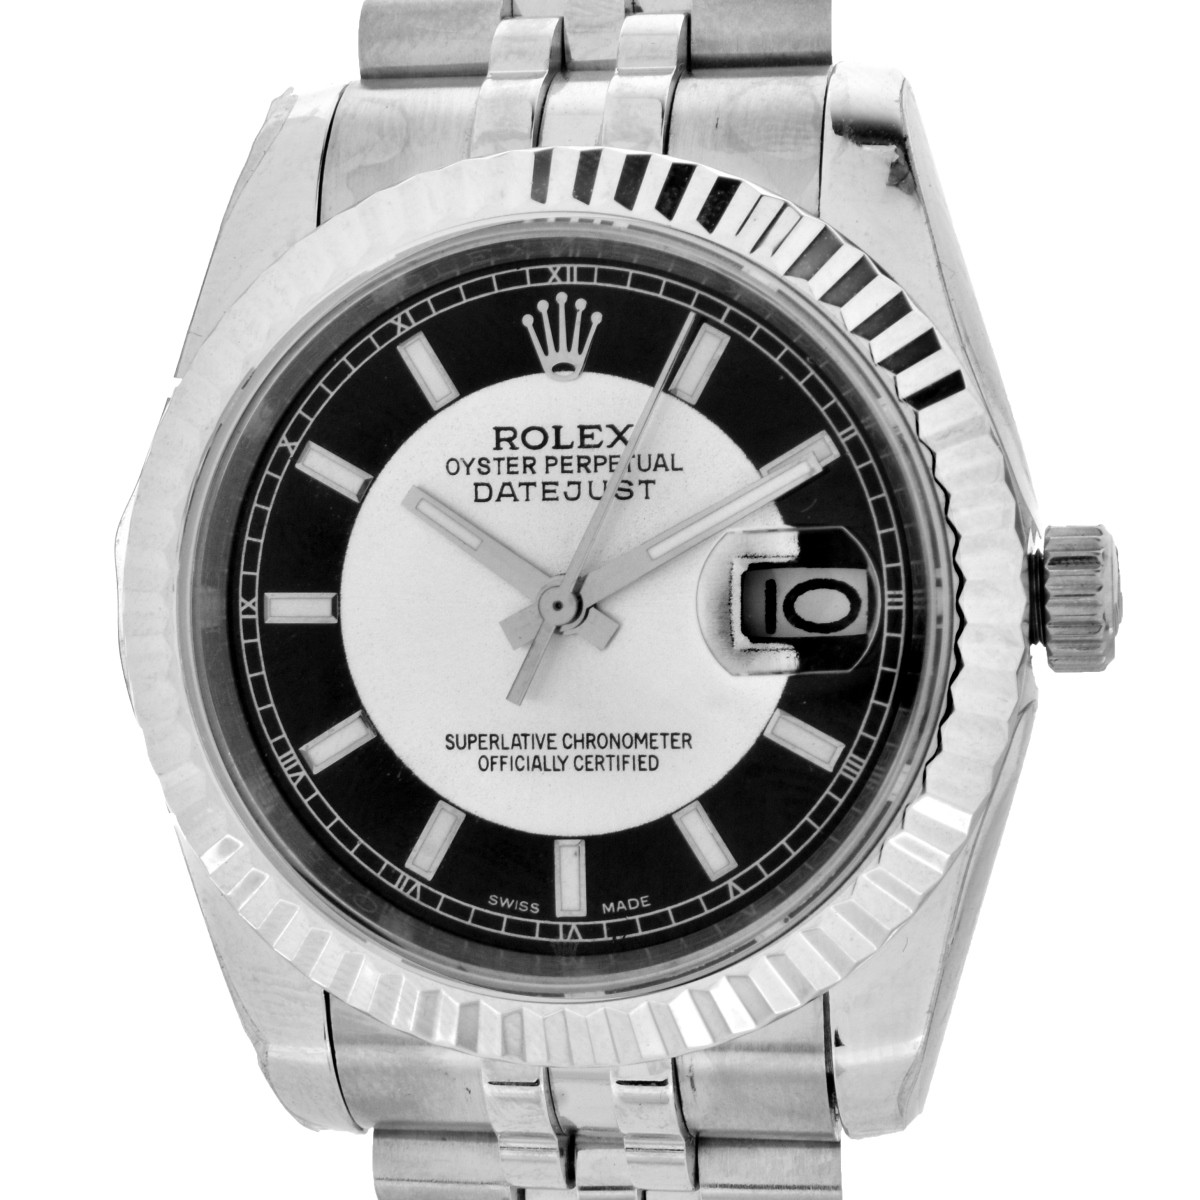 Replica "Rolex Datejust" Watch